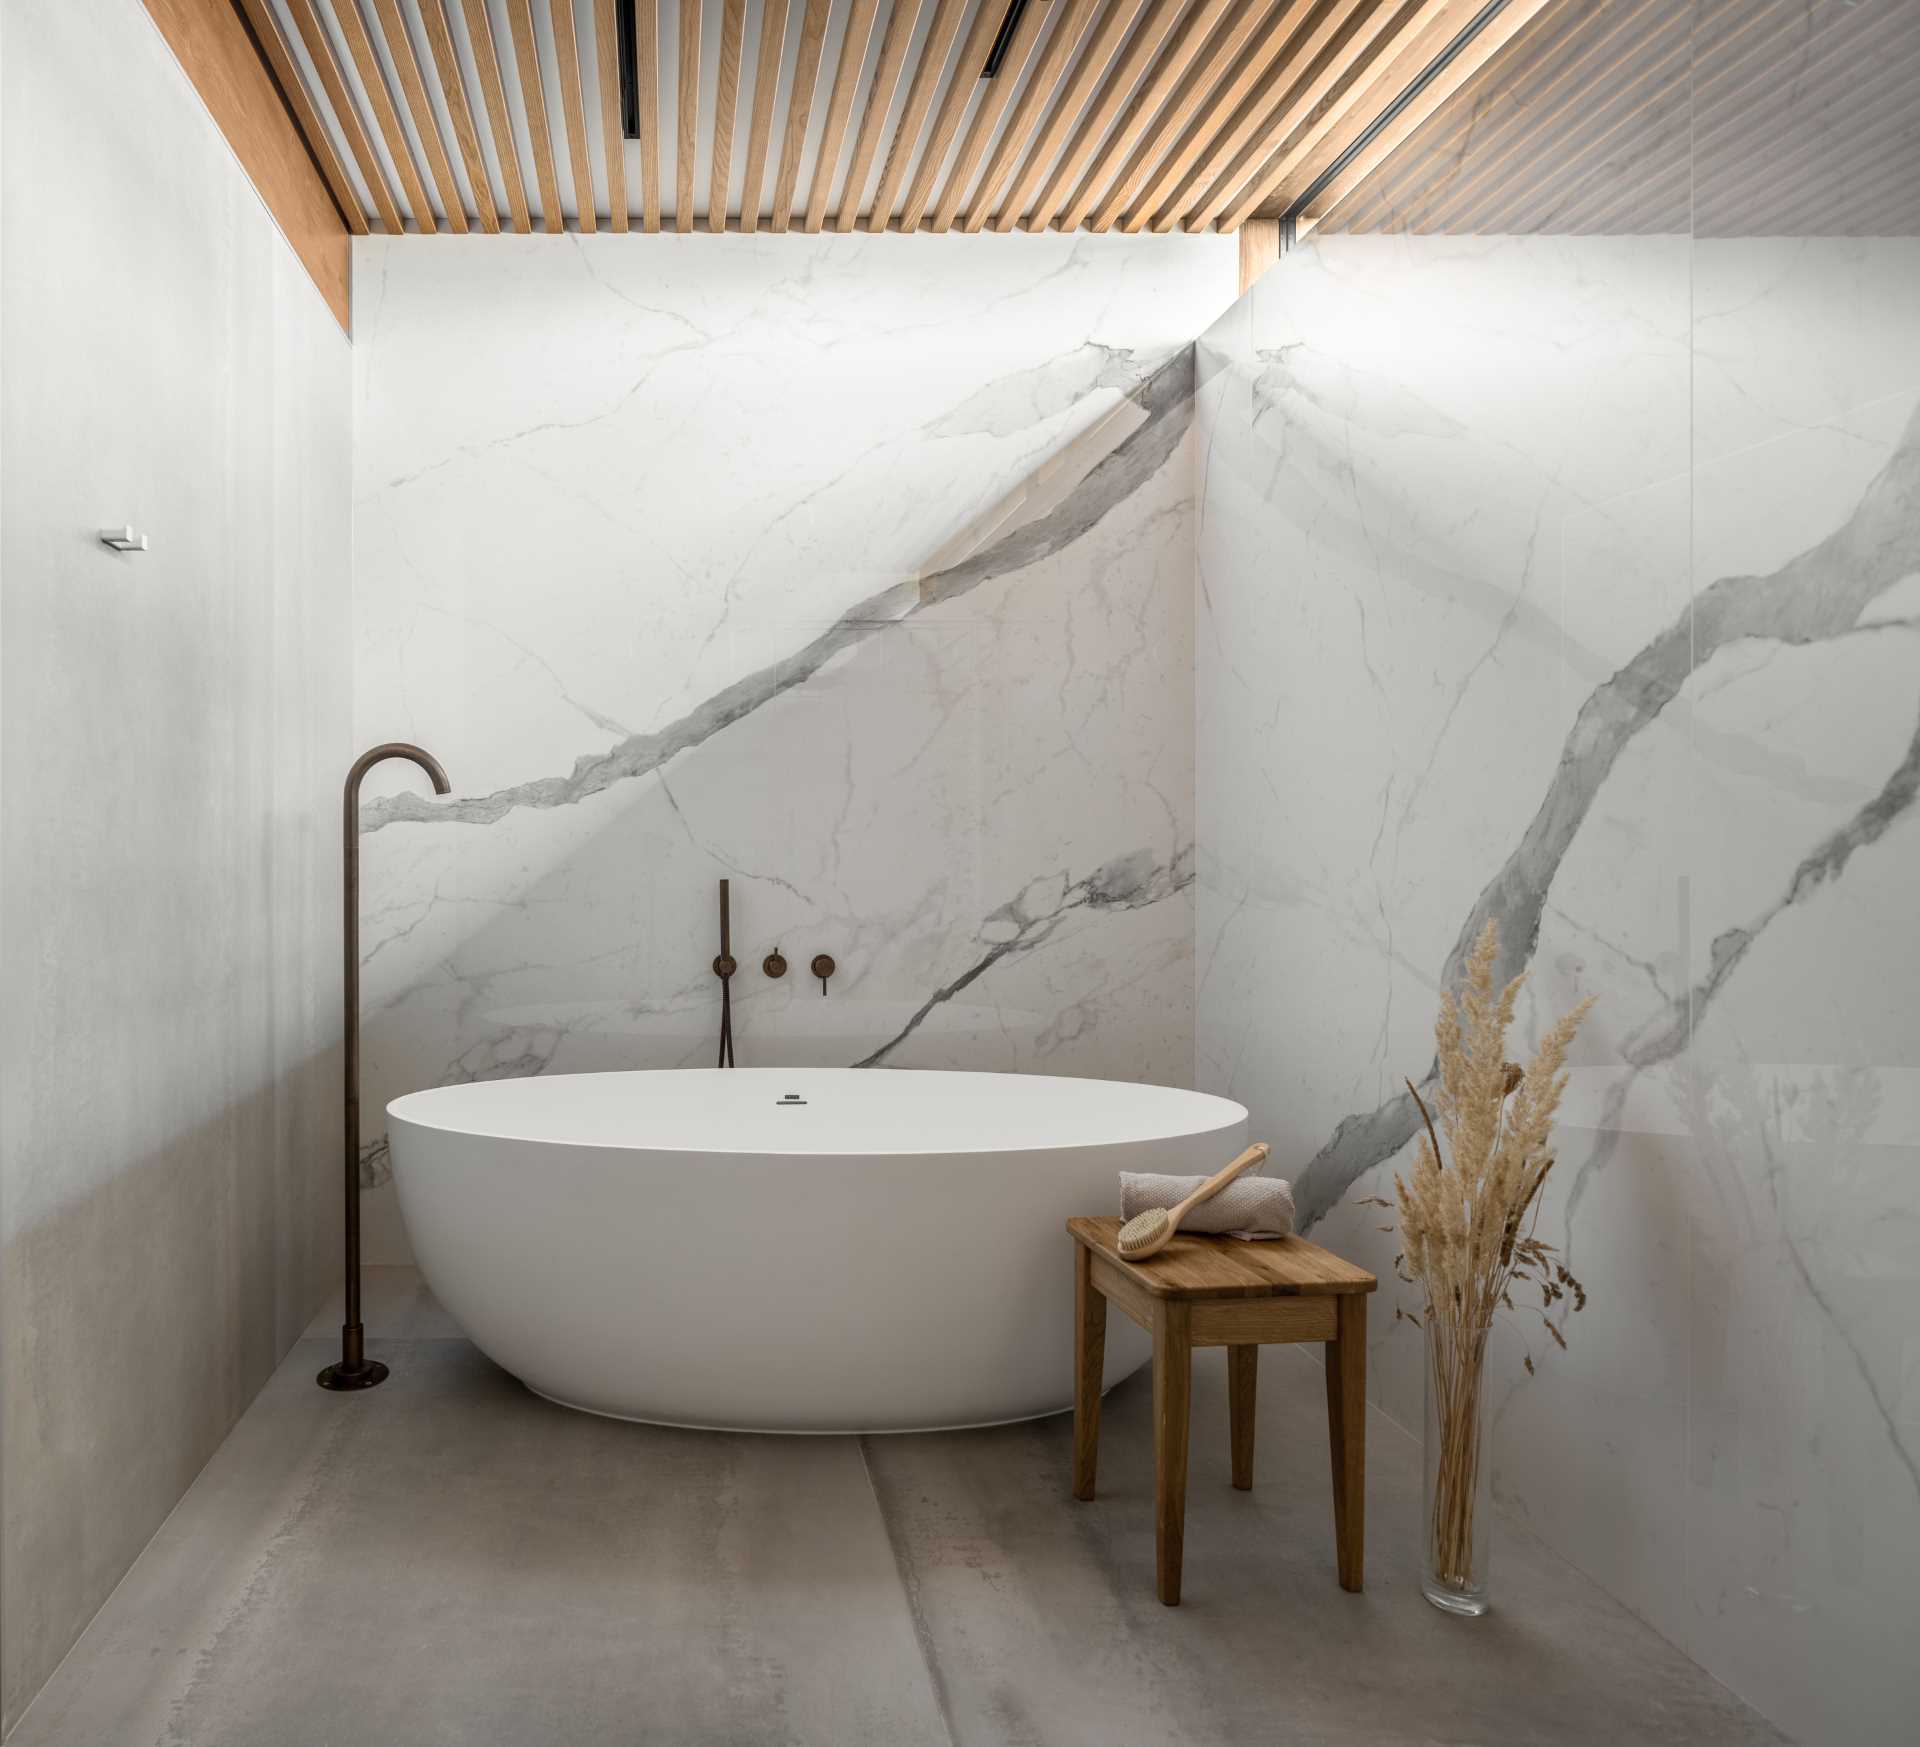 A modern bathroom design with a freestanding bathtub.